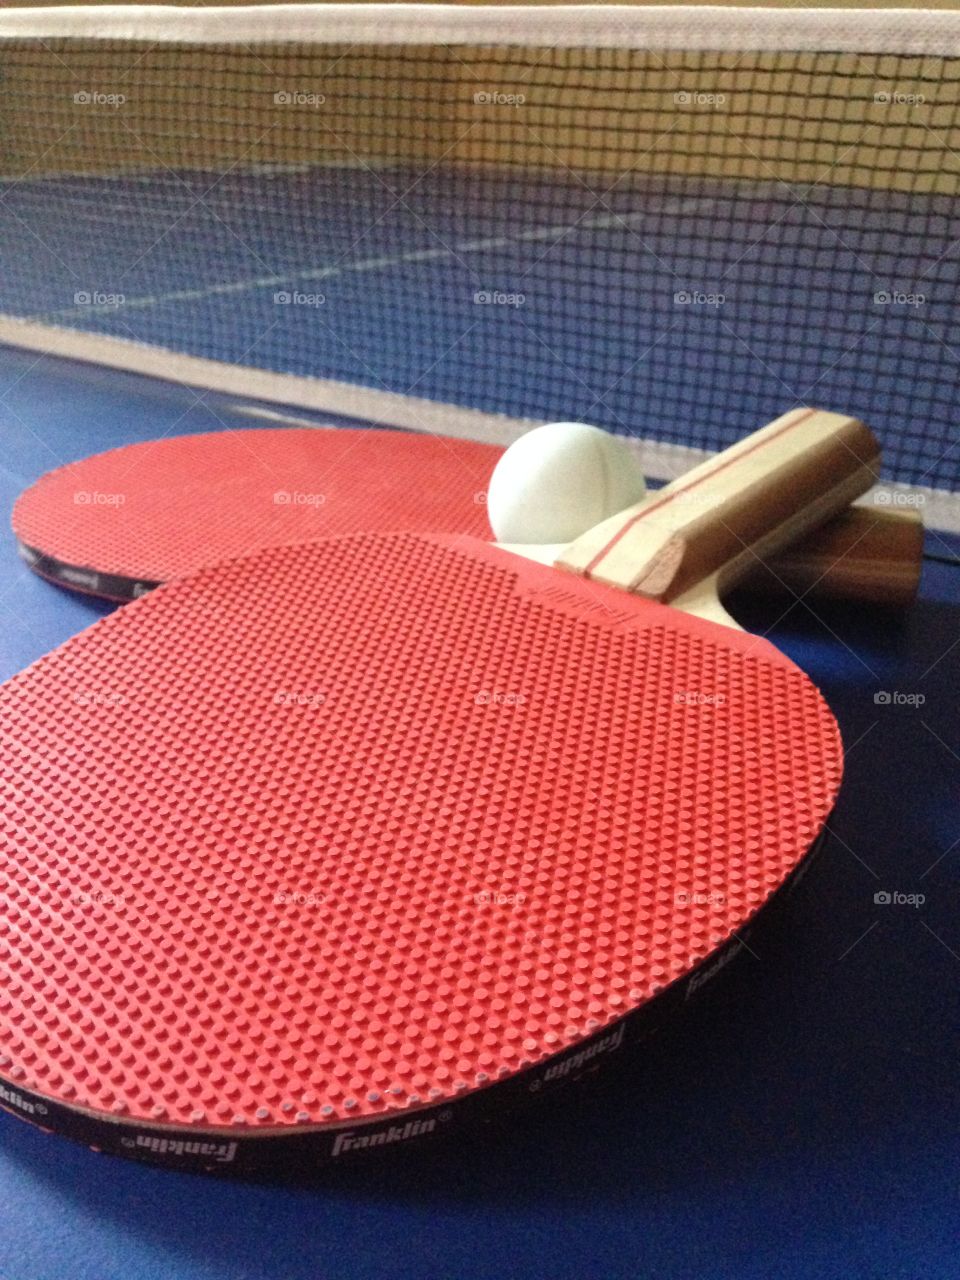 Ping pong, anyone?. Ping pong table and paddles